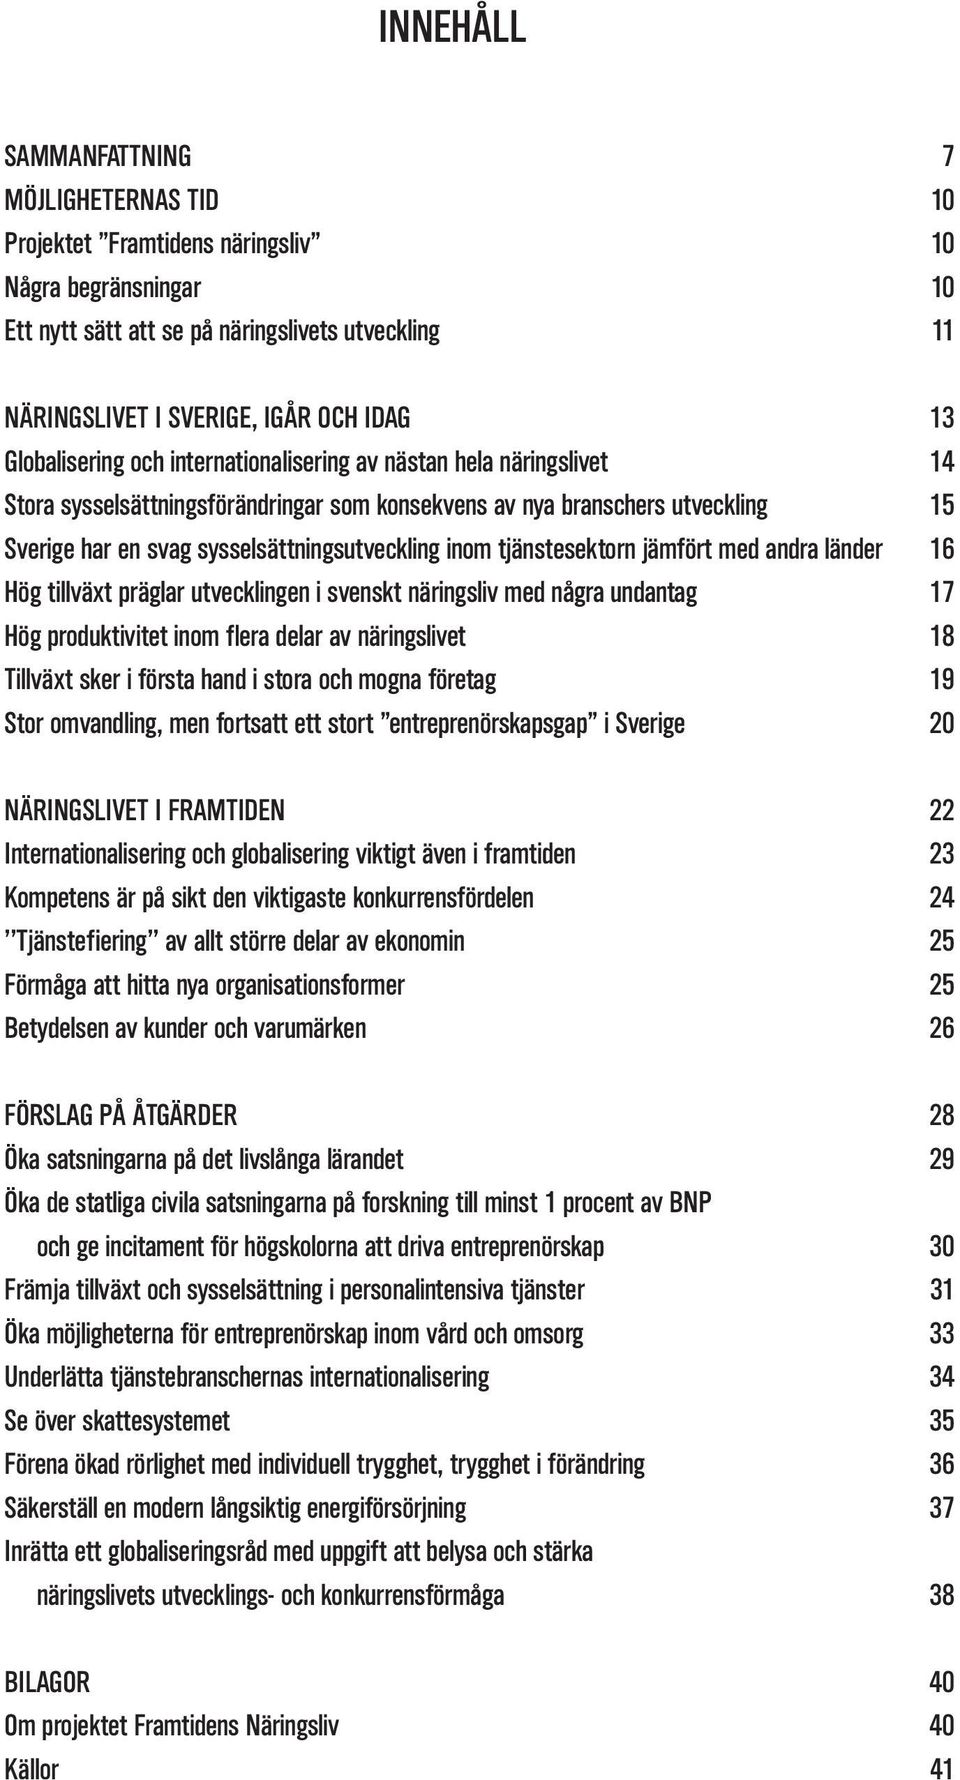 inom tjänstesektorn jämfört med andra länder 16 Hög tillväxt präglar utvecklingen i svenskt näringsliv med några undantag 17 Hög produktivitet inom flera delar av näringslivet 18 Tillväxt sker i